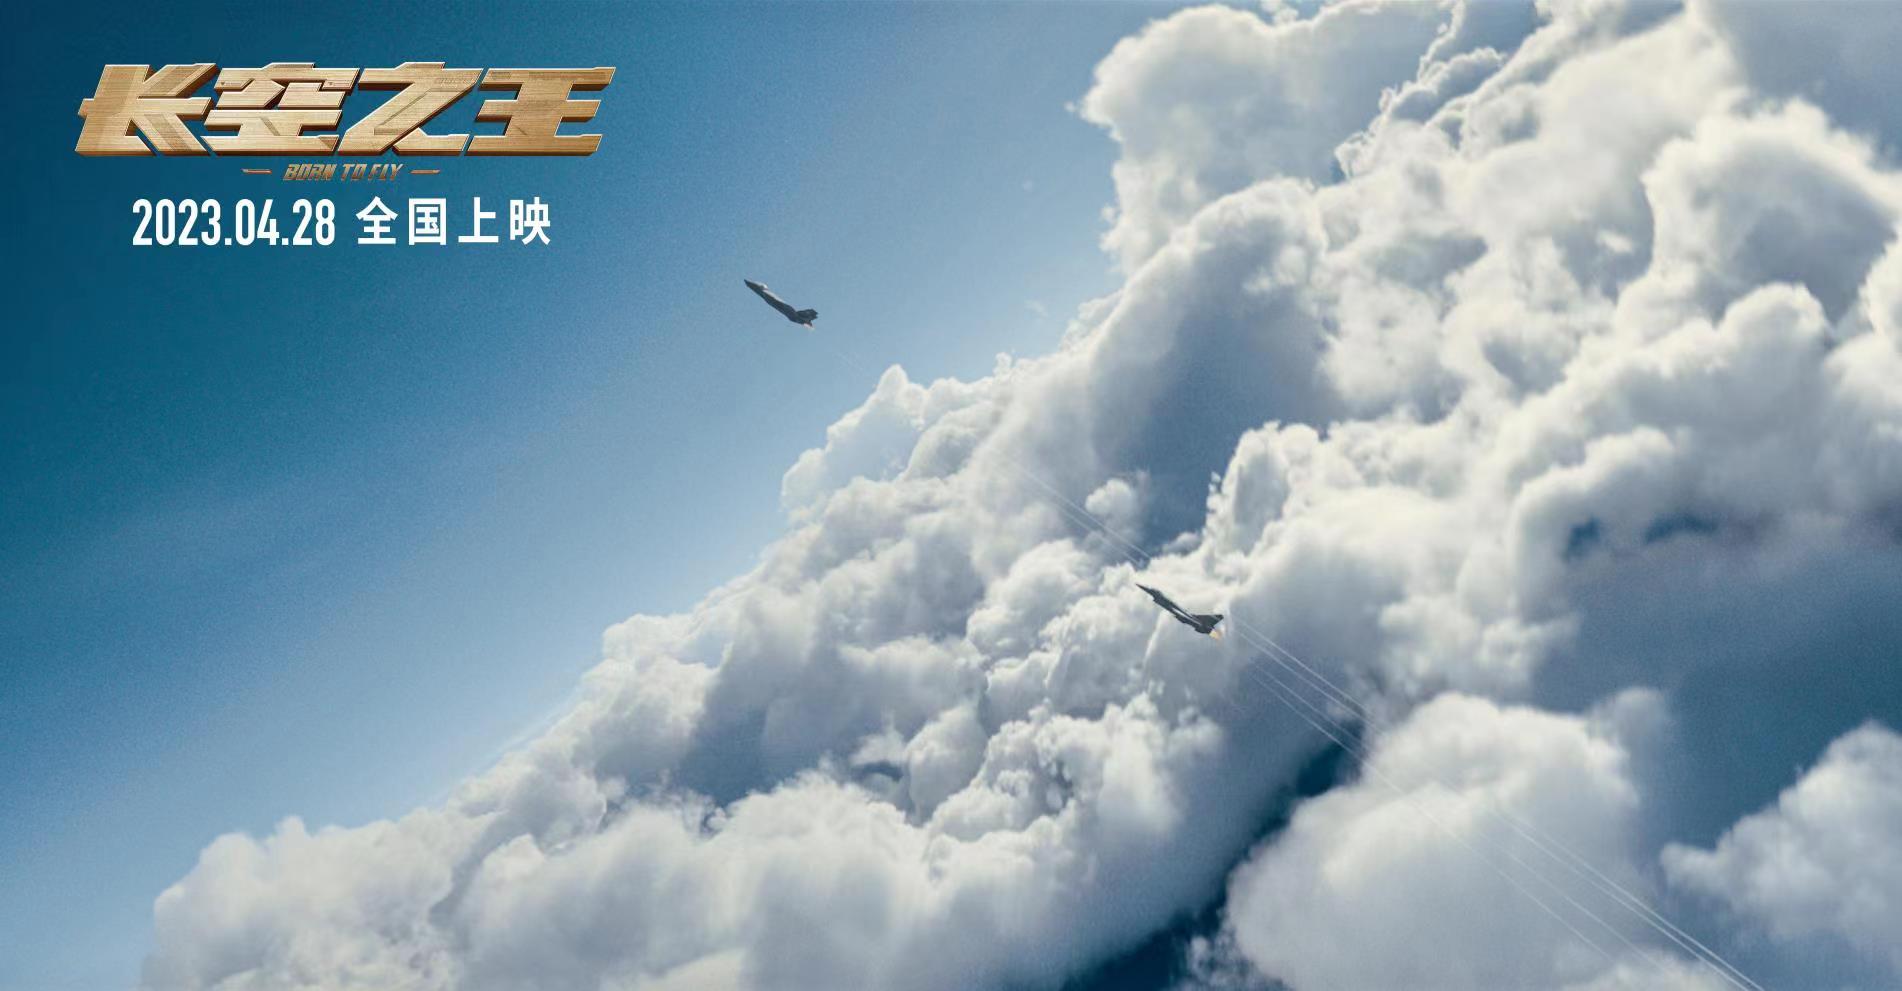 电影《长空之王》发布“燃”版预告 大仰角穿云刺激音爆声震撼